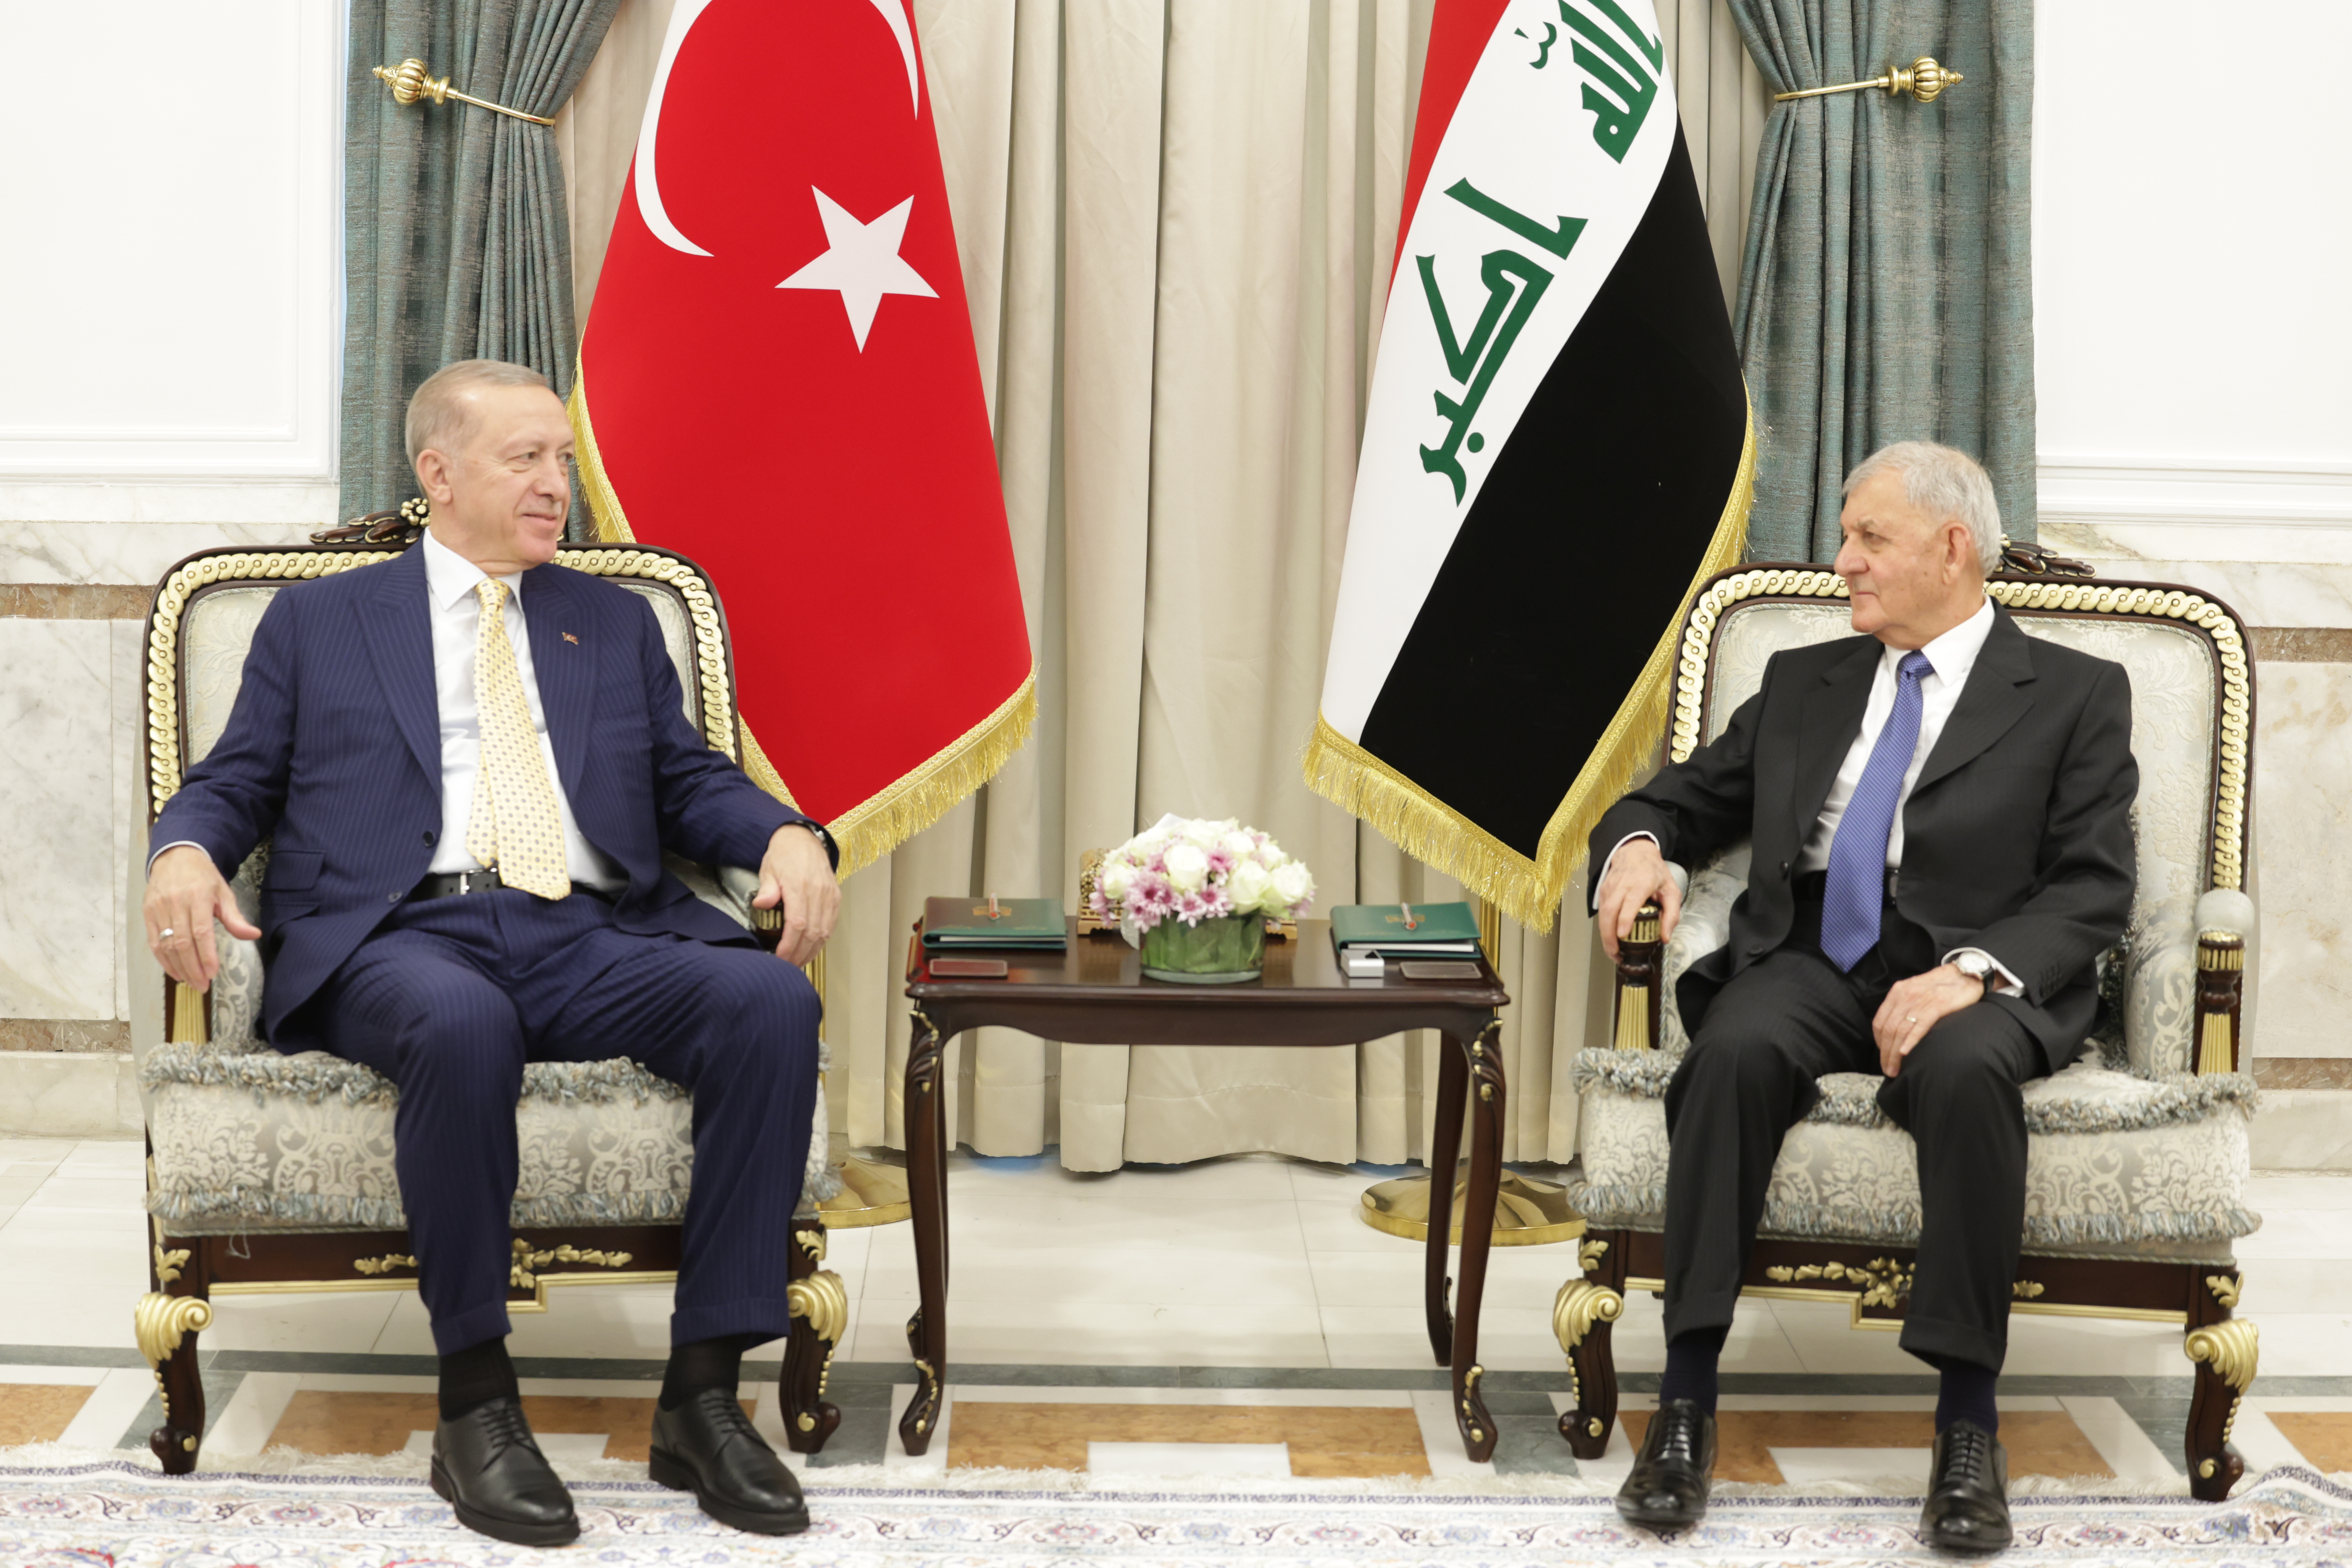   قمة العراق وتركيا.. مباحثات معمقة بشأن العديد من القضايا المهمة